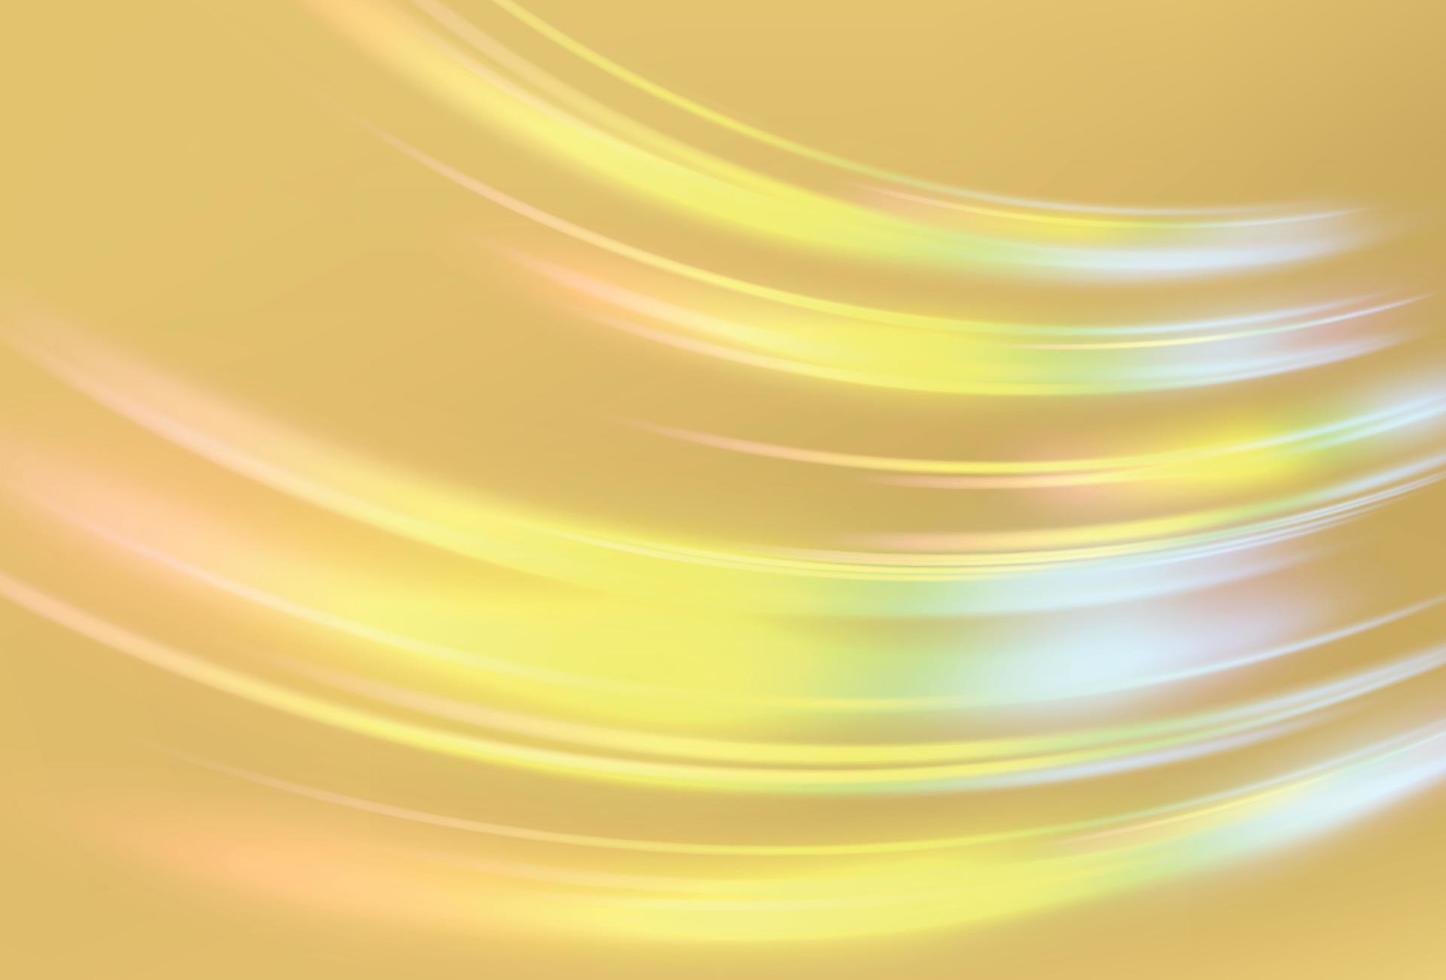 struttura del prisma d'oro. arcobaleno su sfondo dorato. vettore